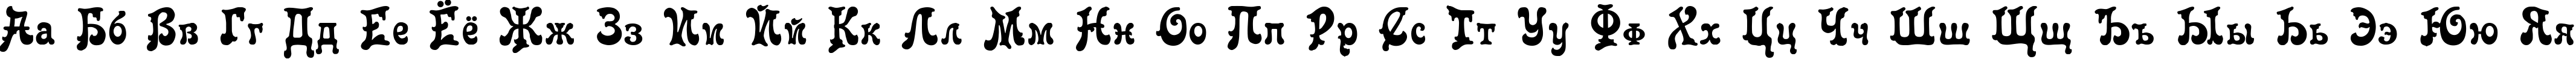 Пример написания русского алфавита шрифтом Roland